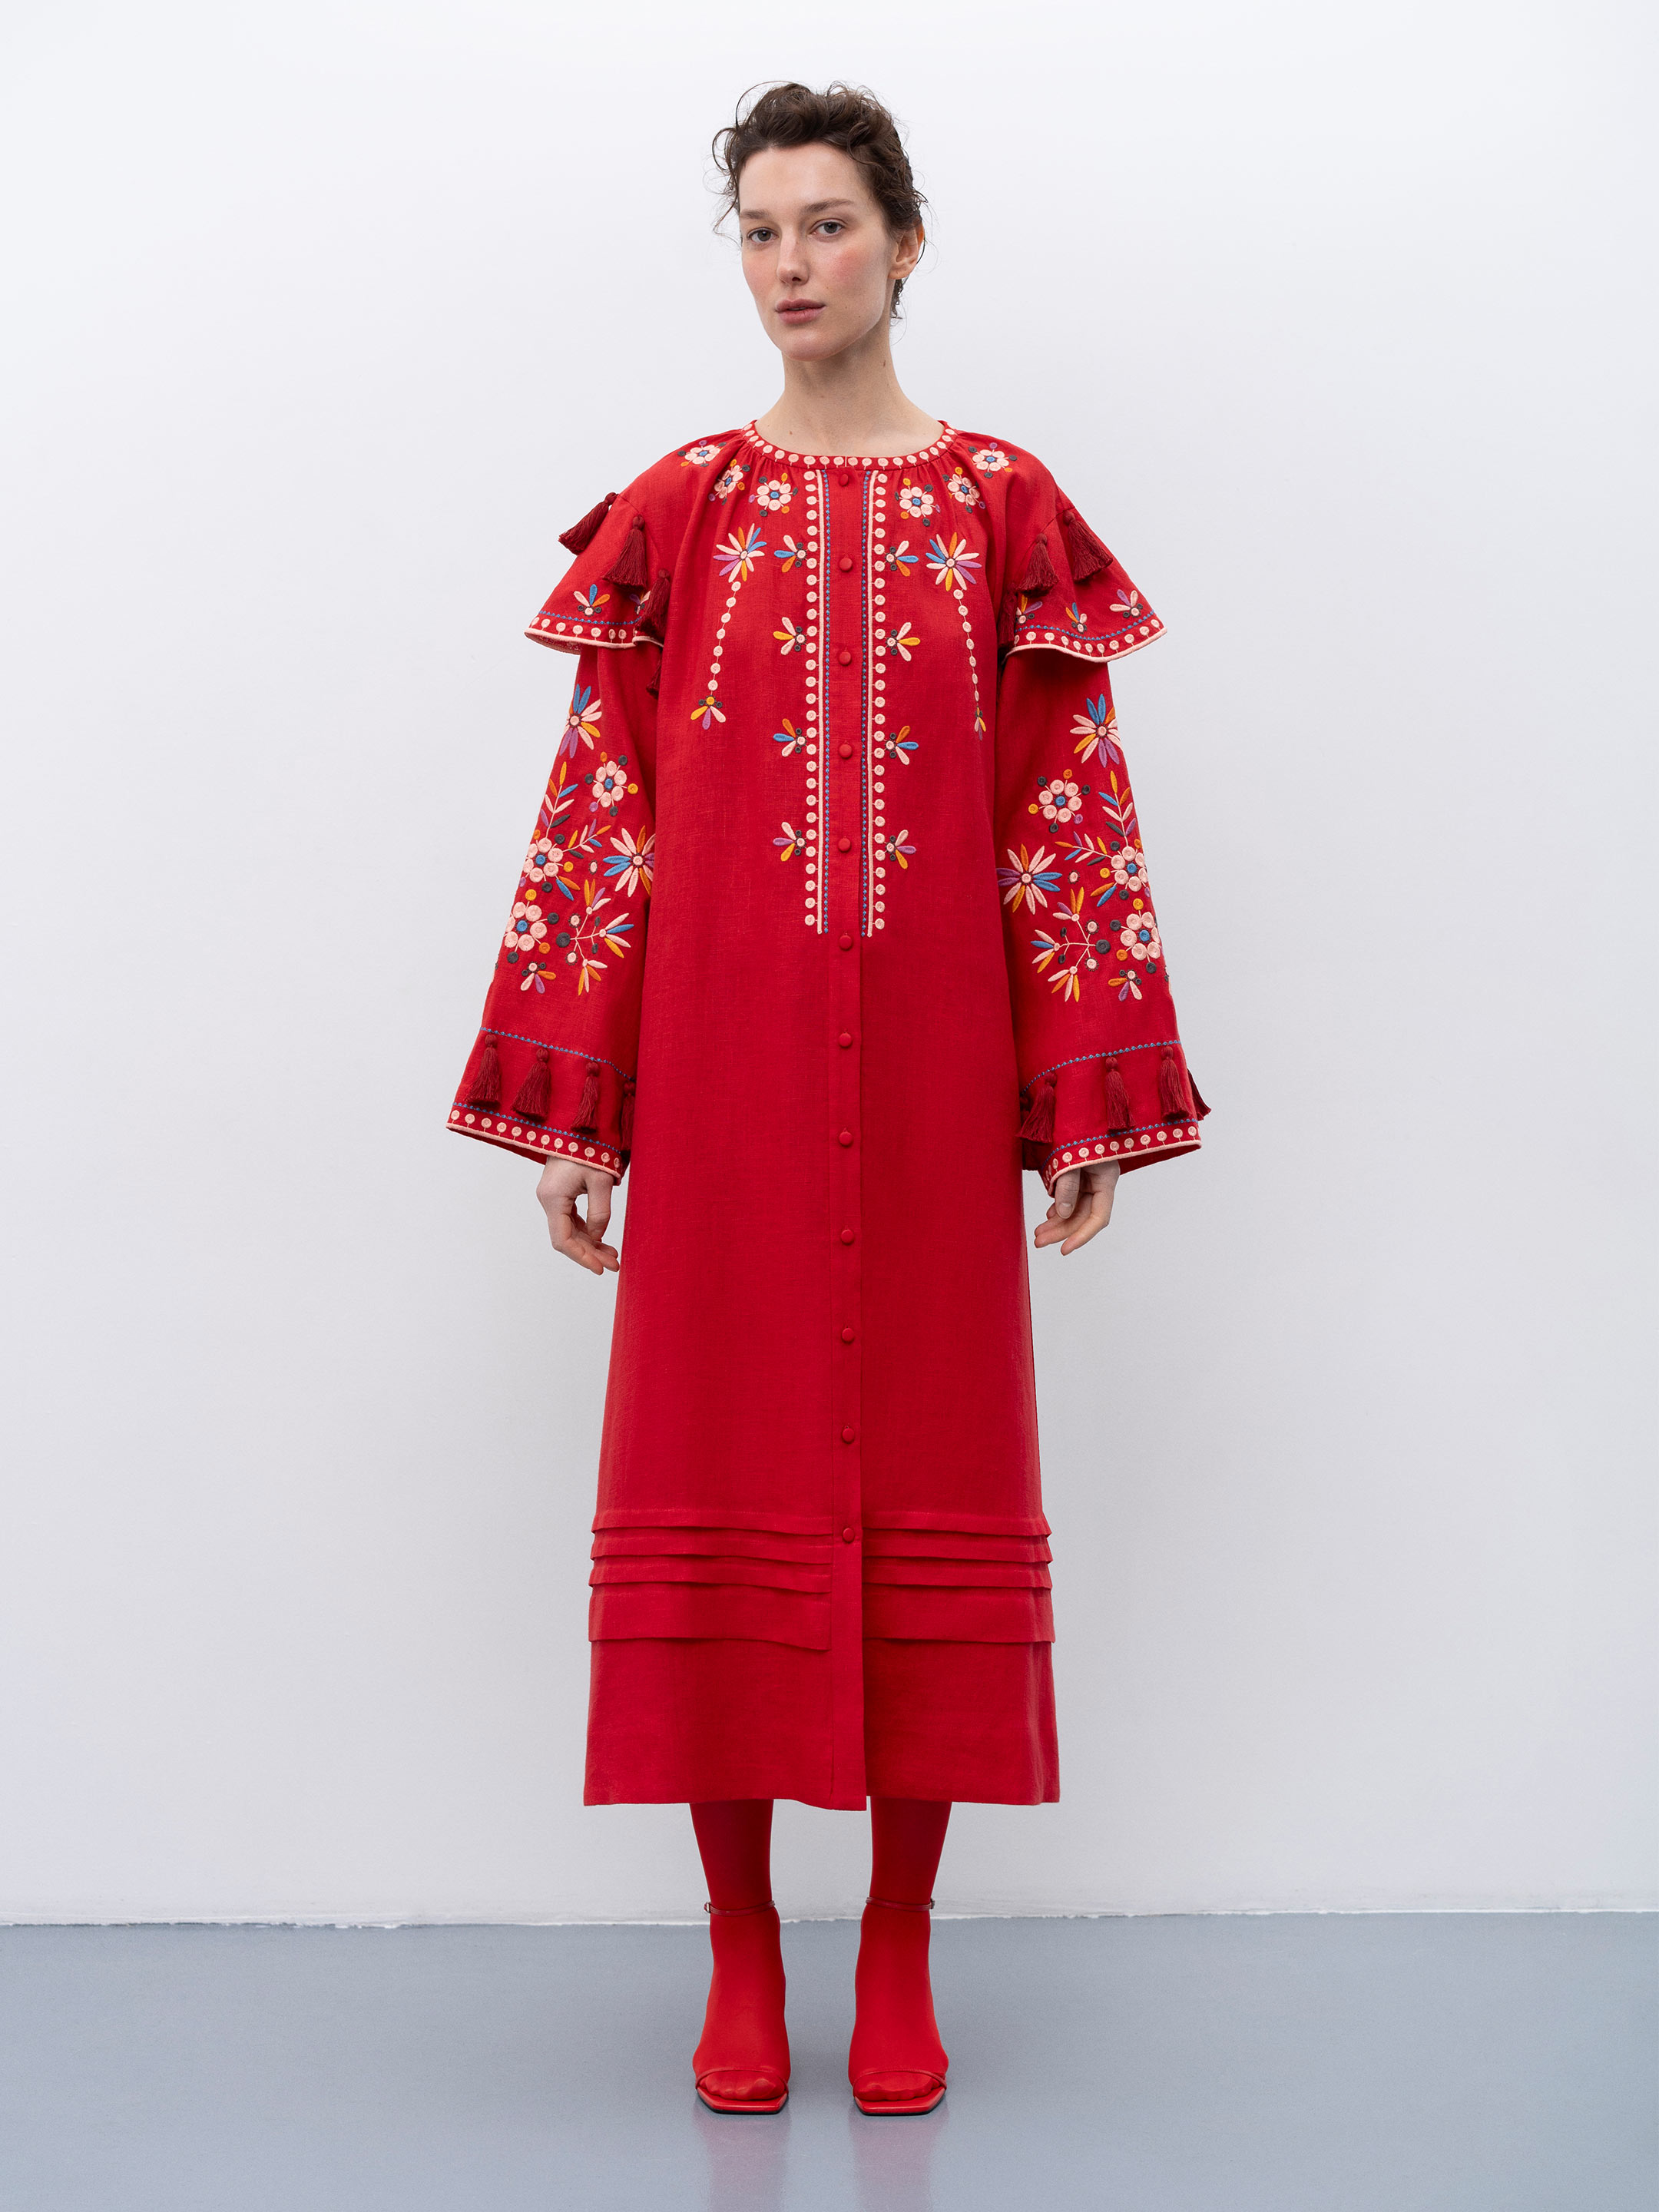 Червона лляна вишита сукня з квітковими мотивами та китицями "Веснянка" - фото 1